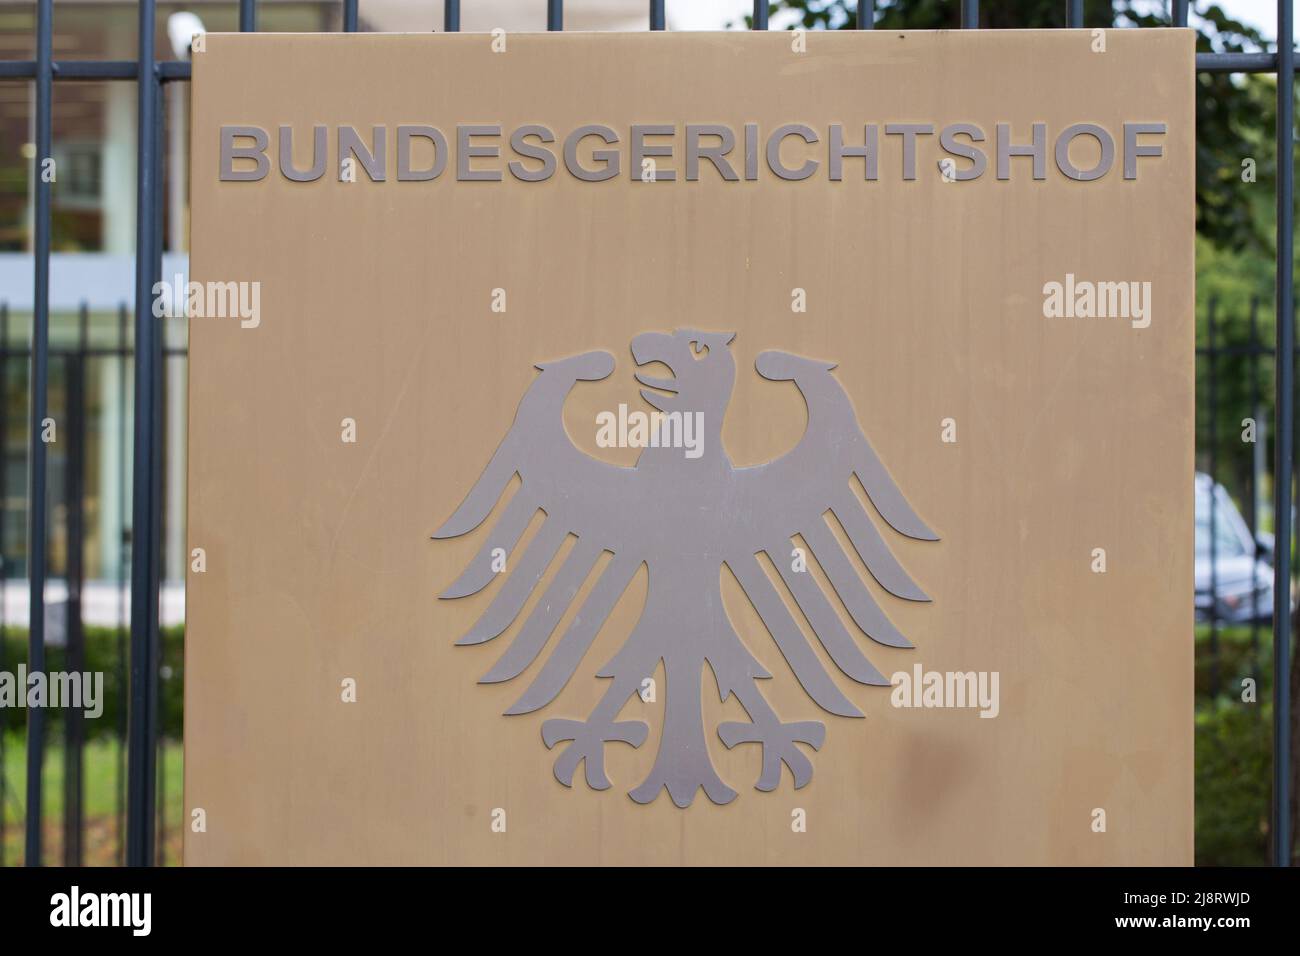 Karlsruhe, Allemagne - 28 août 2021 : panneau Bundesgerichtshof - à l'entrée de la cour fédérale de justice allemande. Banque D'Images